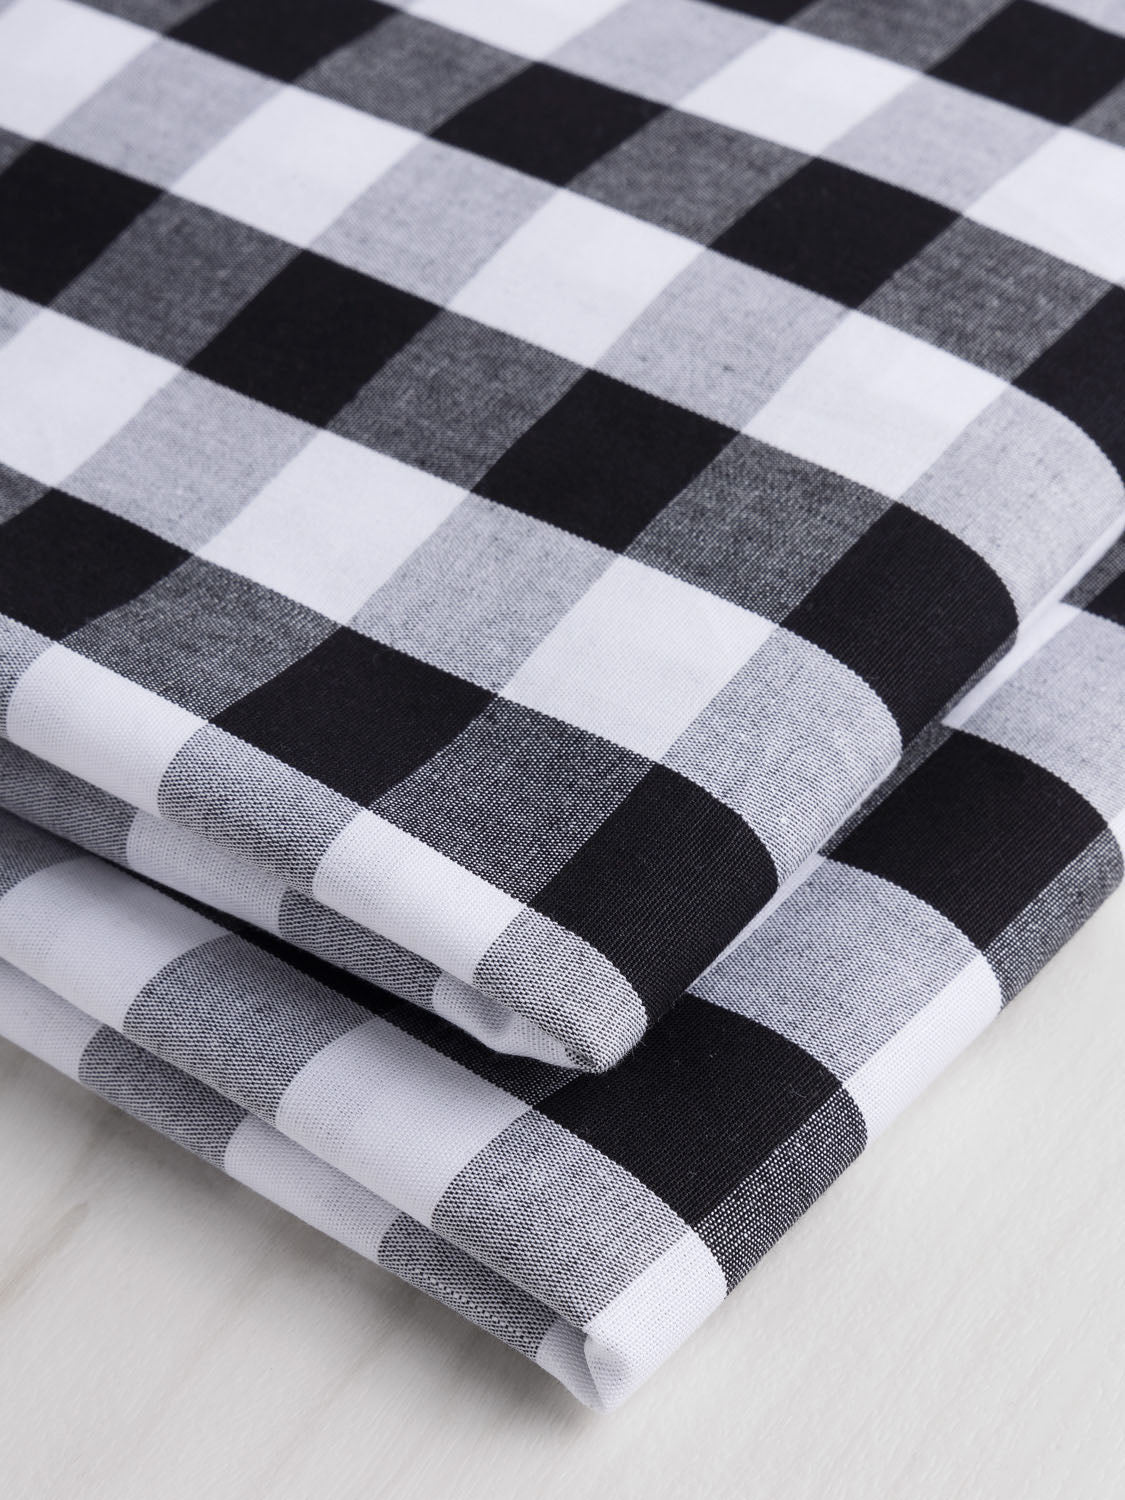 Large Scale Yarn-Dyed Gingham Cotton - Black + White | Core Fabrics